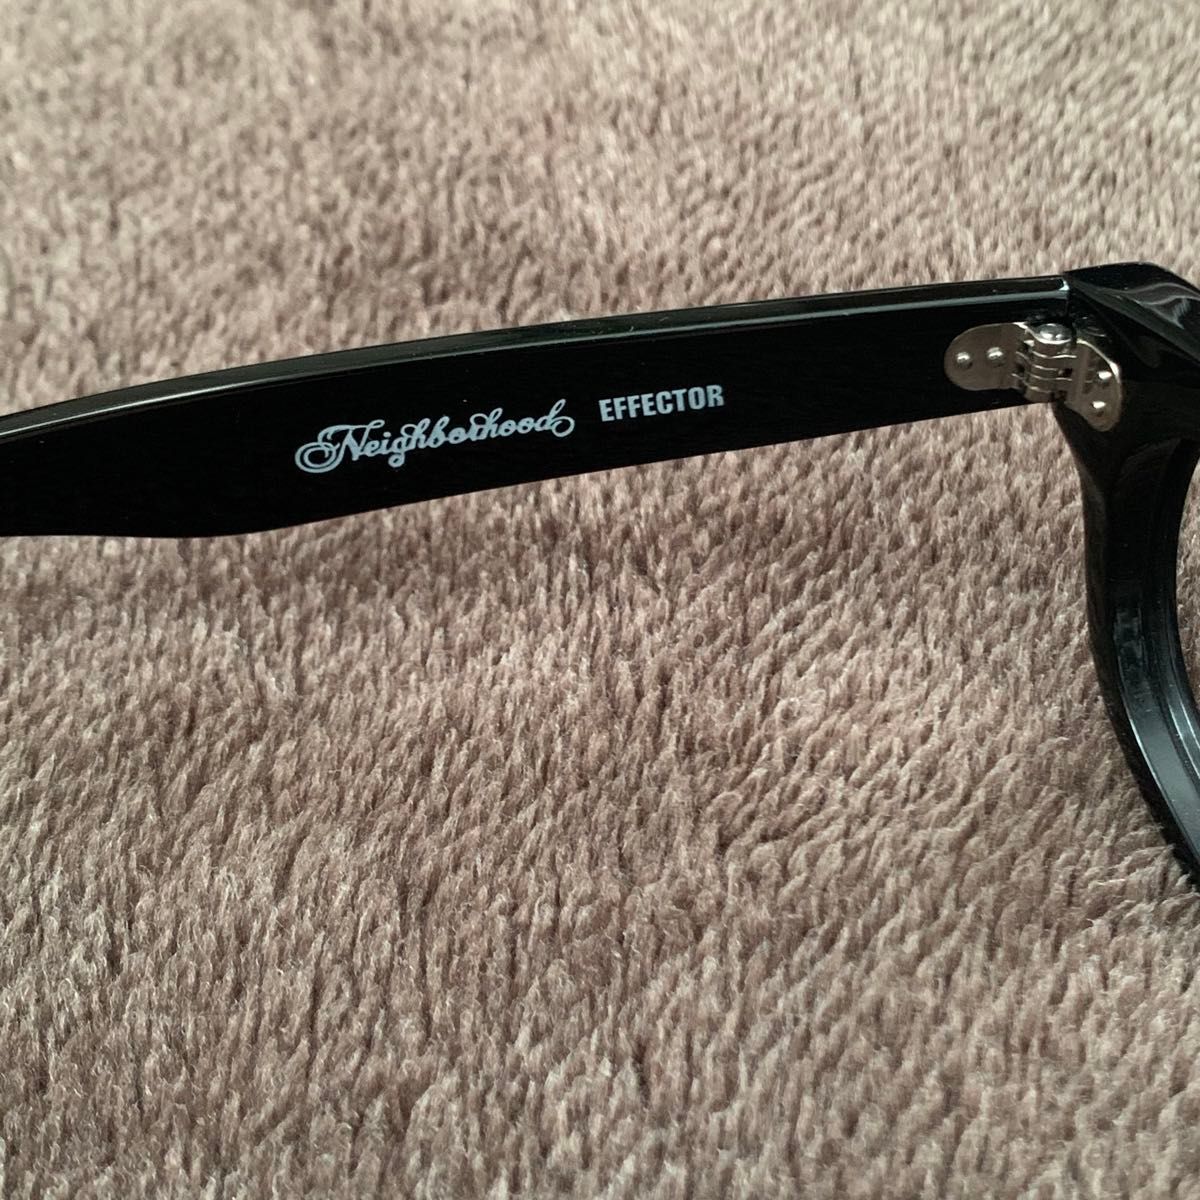 ◆美品 送料無料 EFFECTOR×NEIGHBORHOOD TRAMP メガネフレーム 黒 ブラック 光沢 眼鏡 サングラス